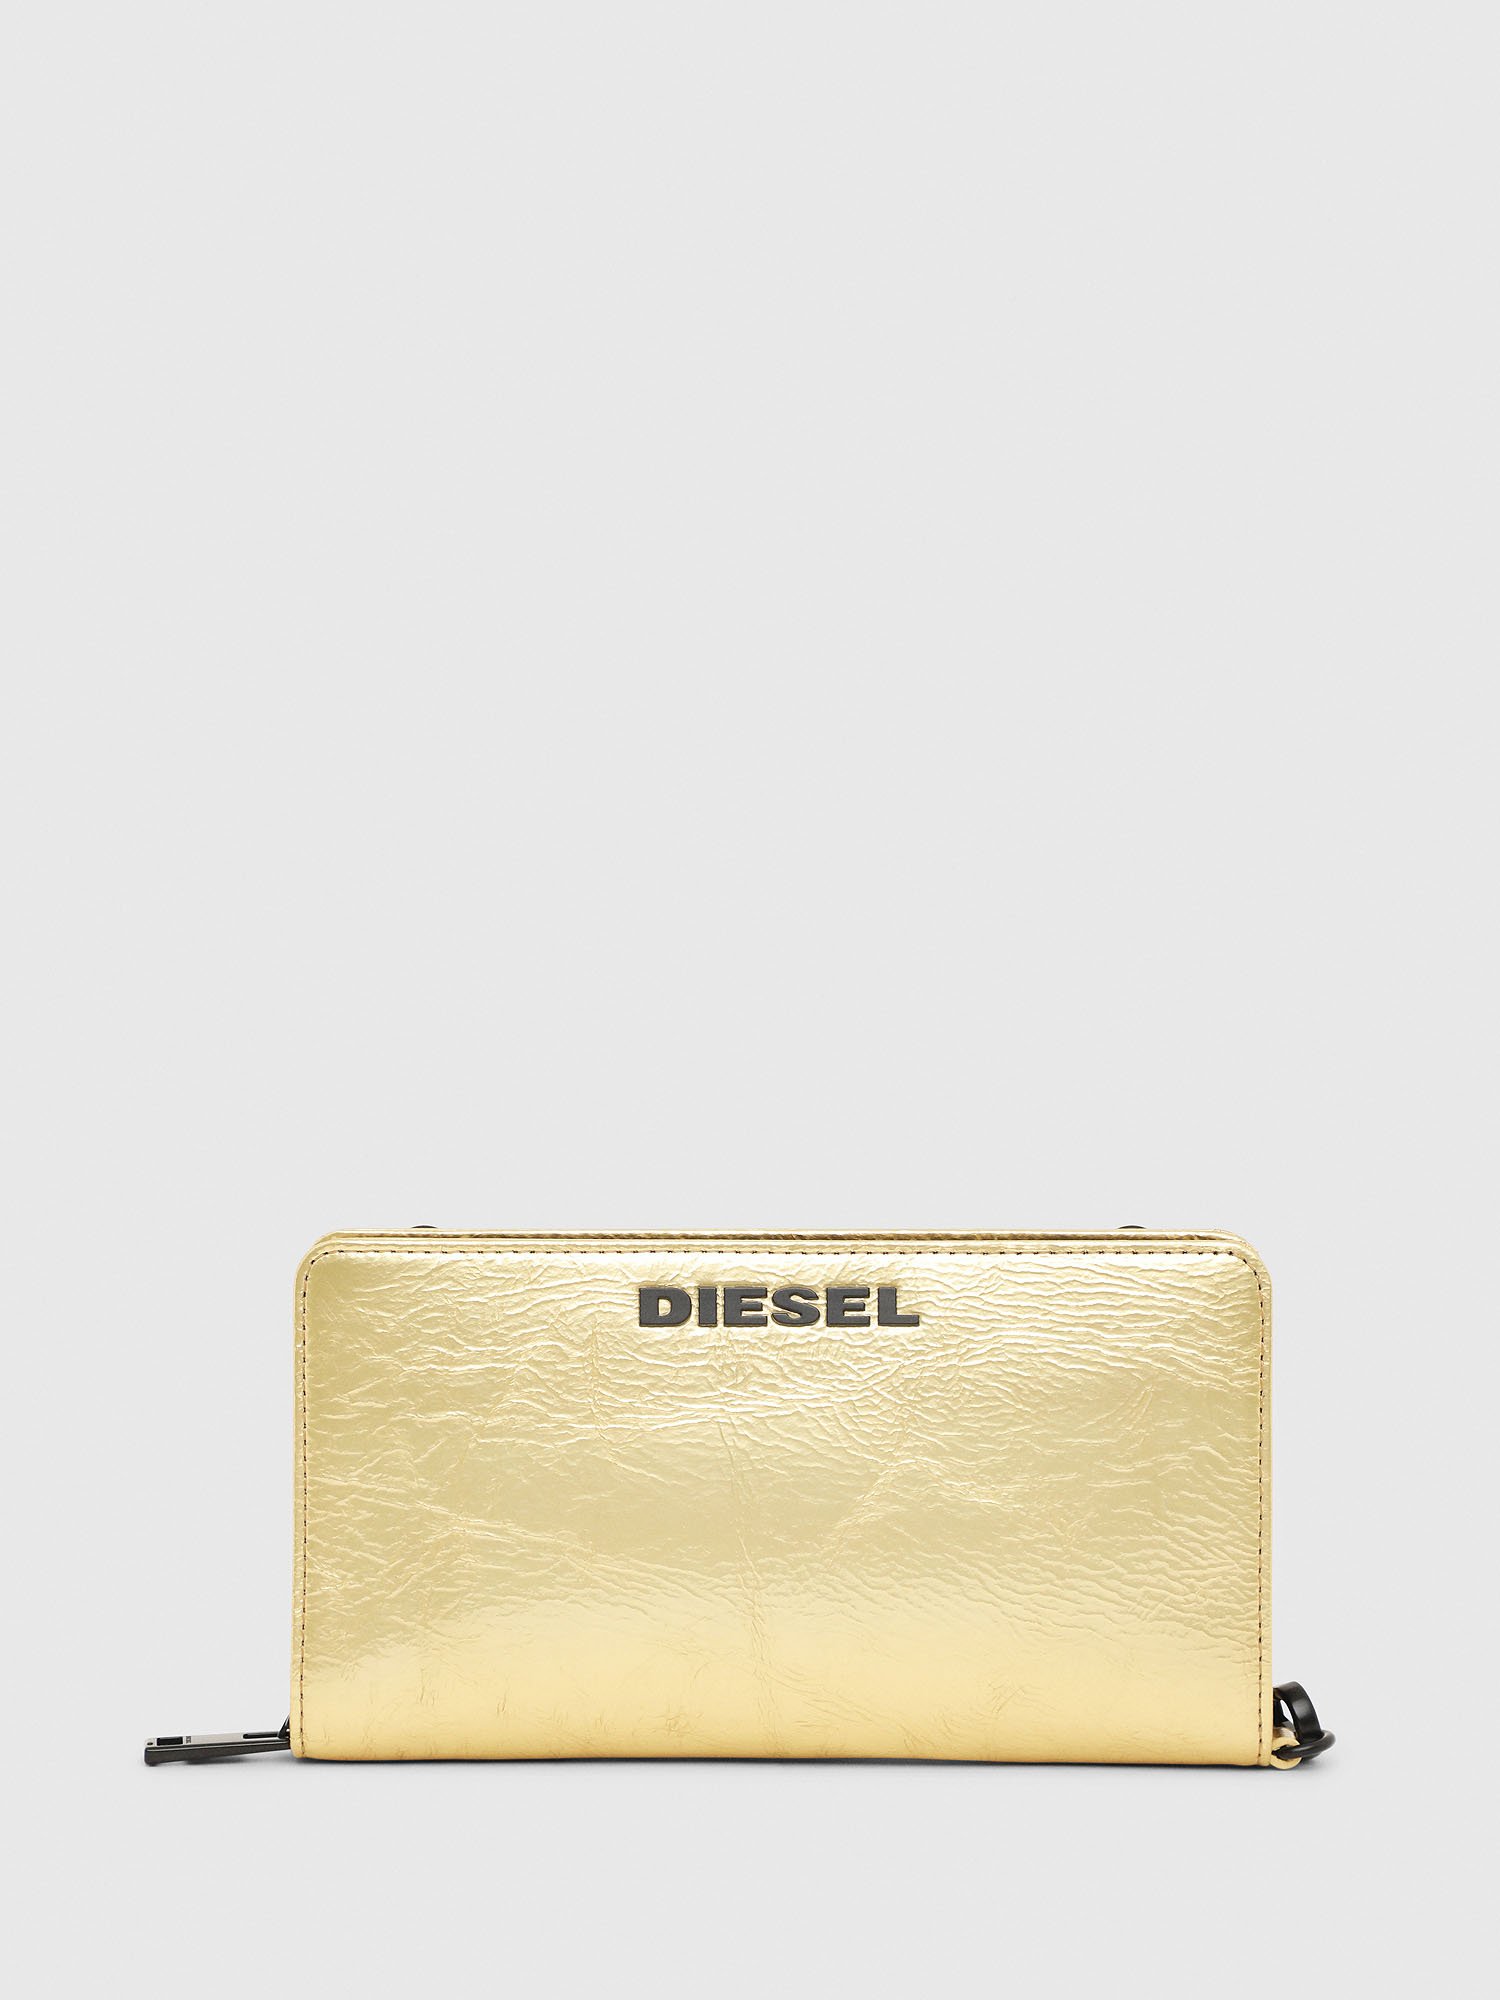 Diesel - GRANATO LCLS, Gold - Image 1